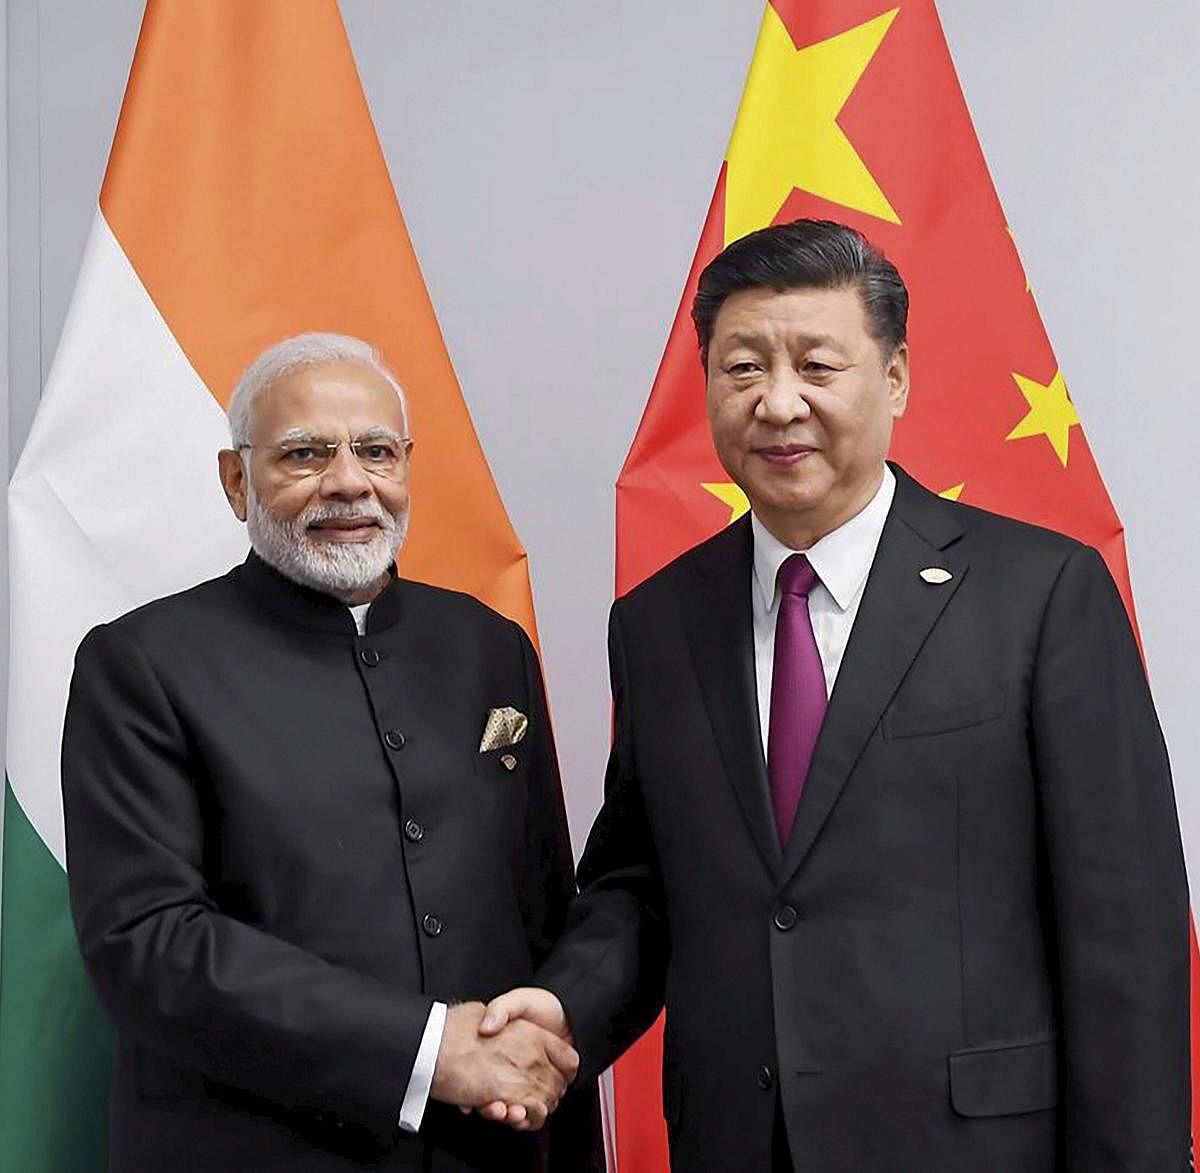 China President Xi Jinping and Prime Minister Narendra Modi